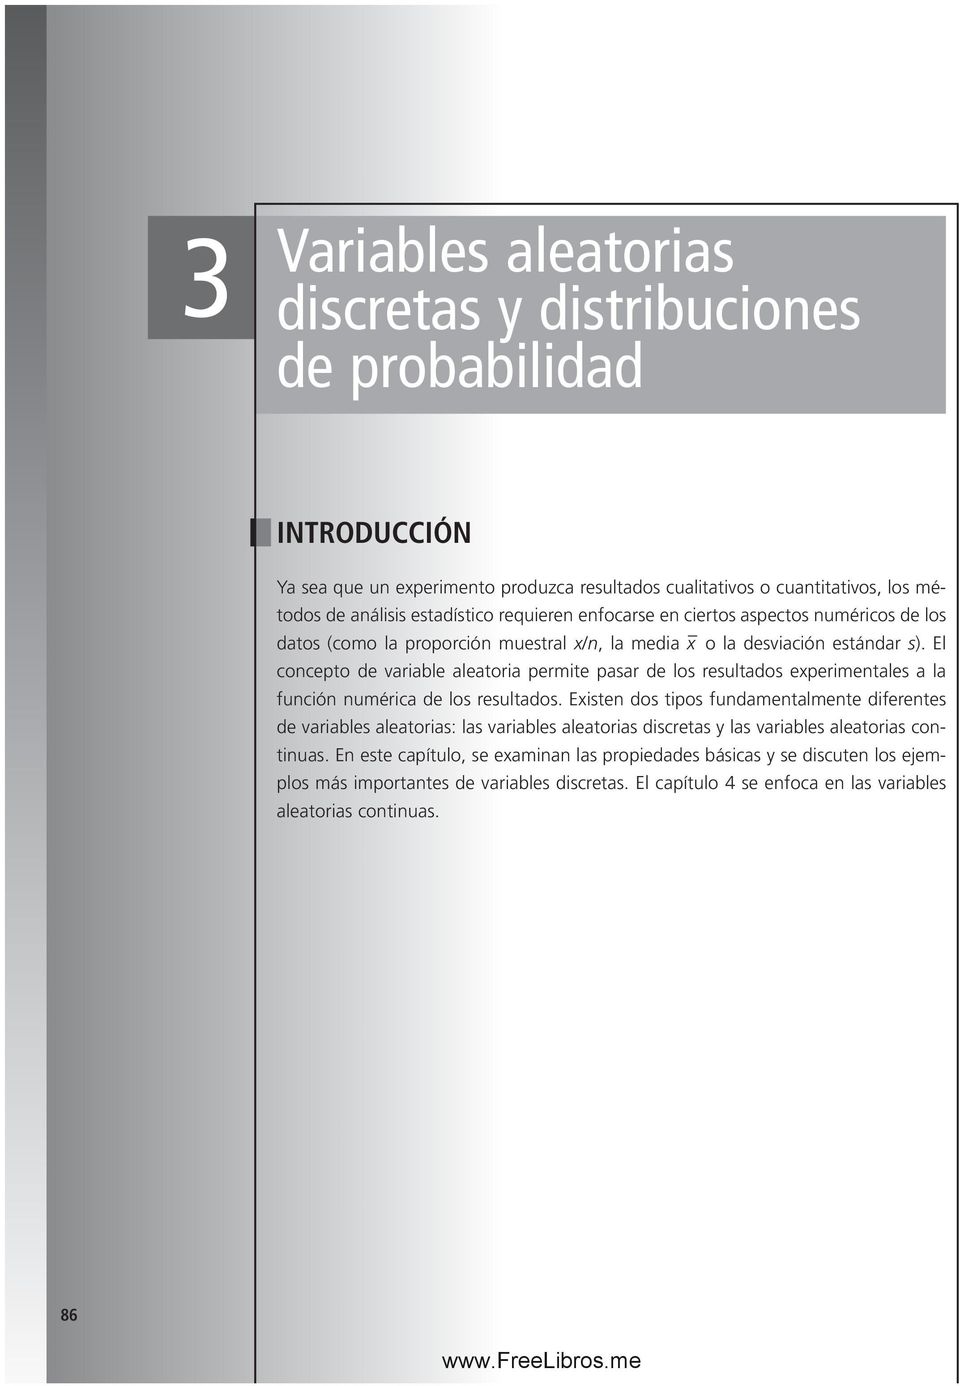 El concepto de variable aleatoria permite pasar de los resultados experimentales a la función numérica de los resultados.